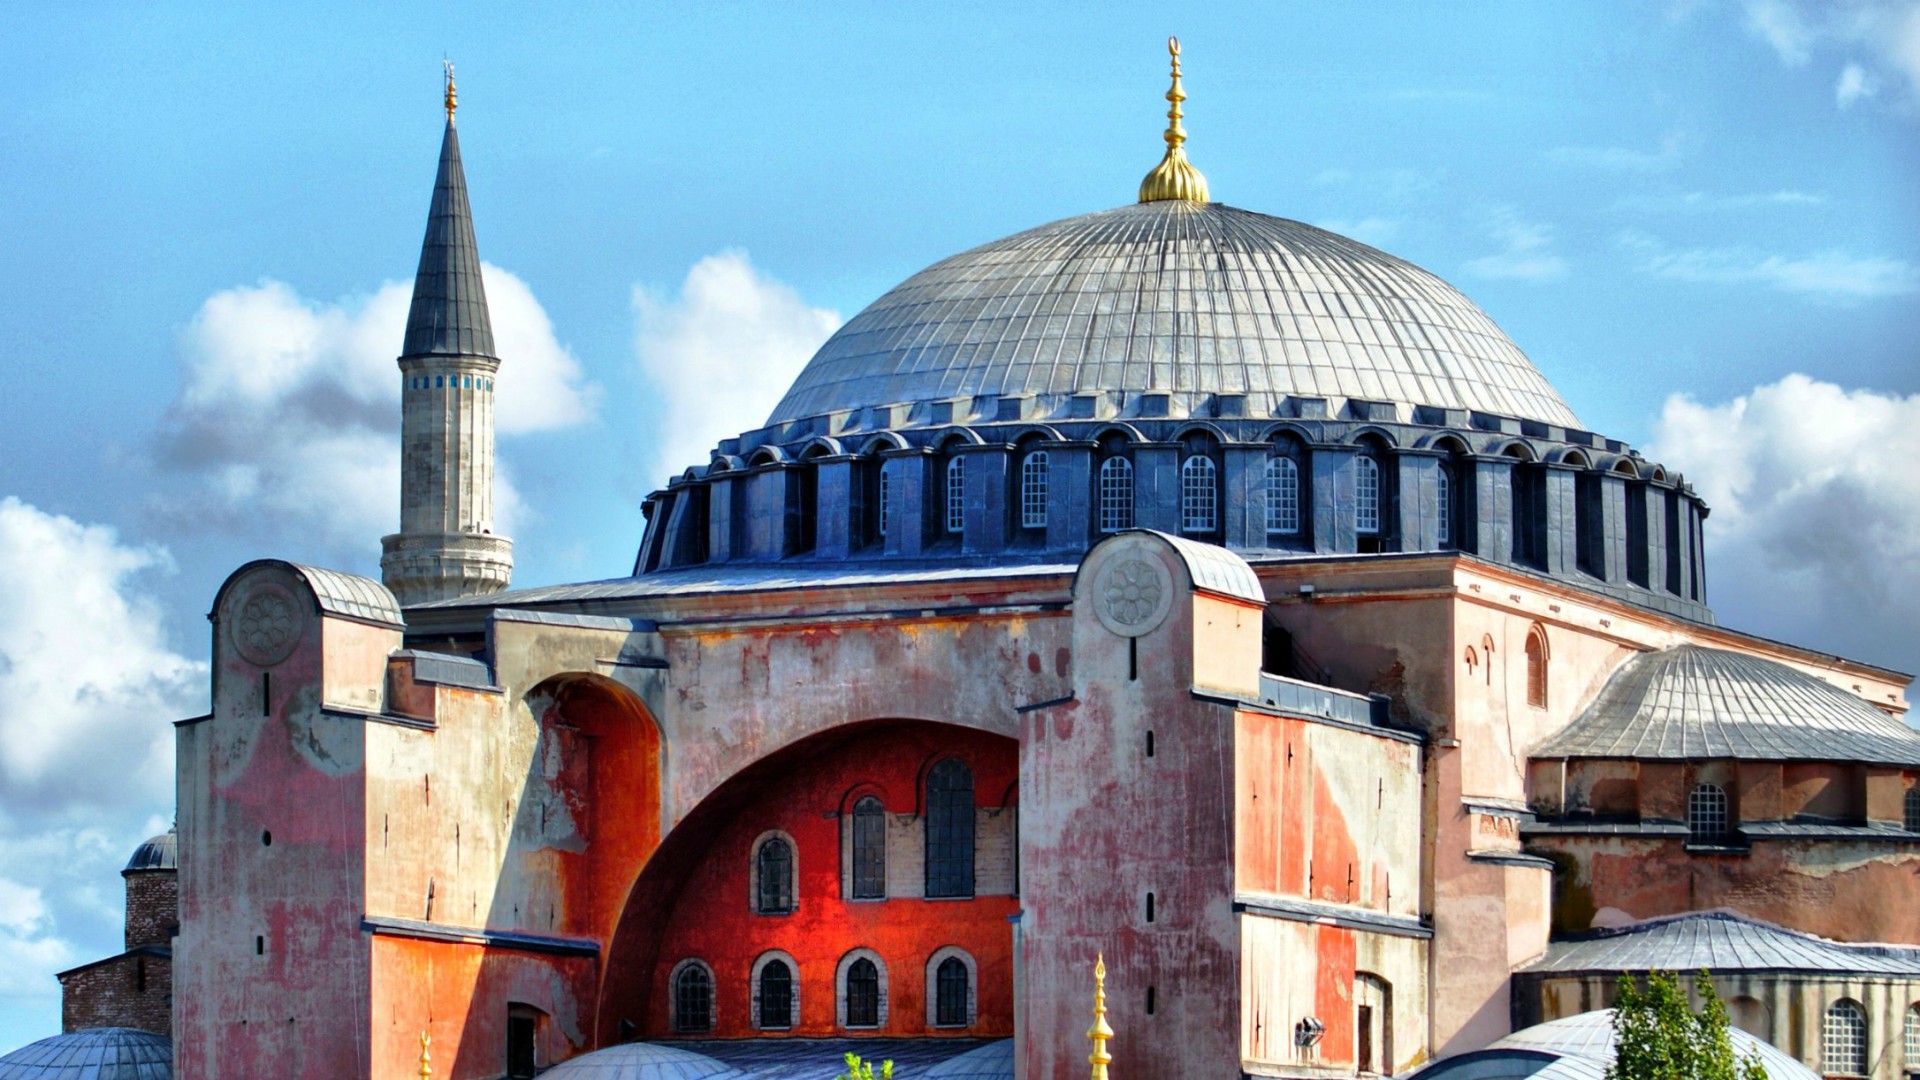 La basilique Sainte-Sophie, à Istanbul, abrite actuellement un musée (Photo: David Spender/Flickr/CC BY 2.0)